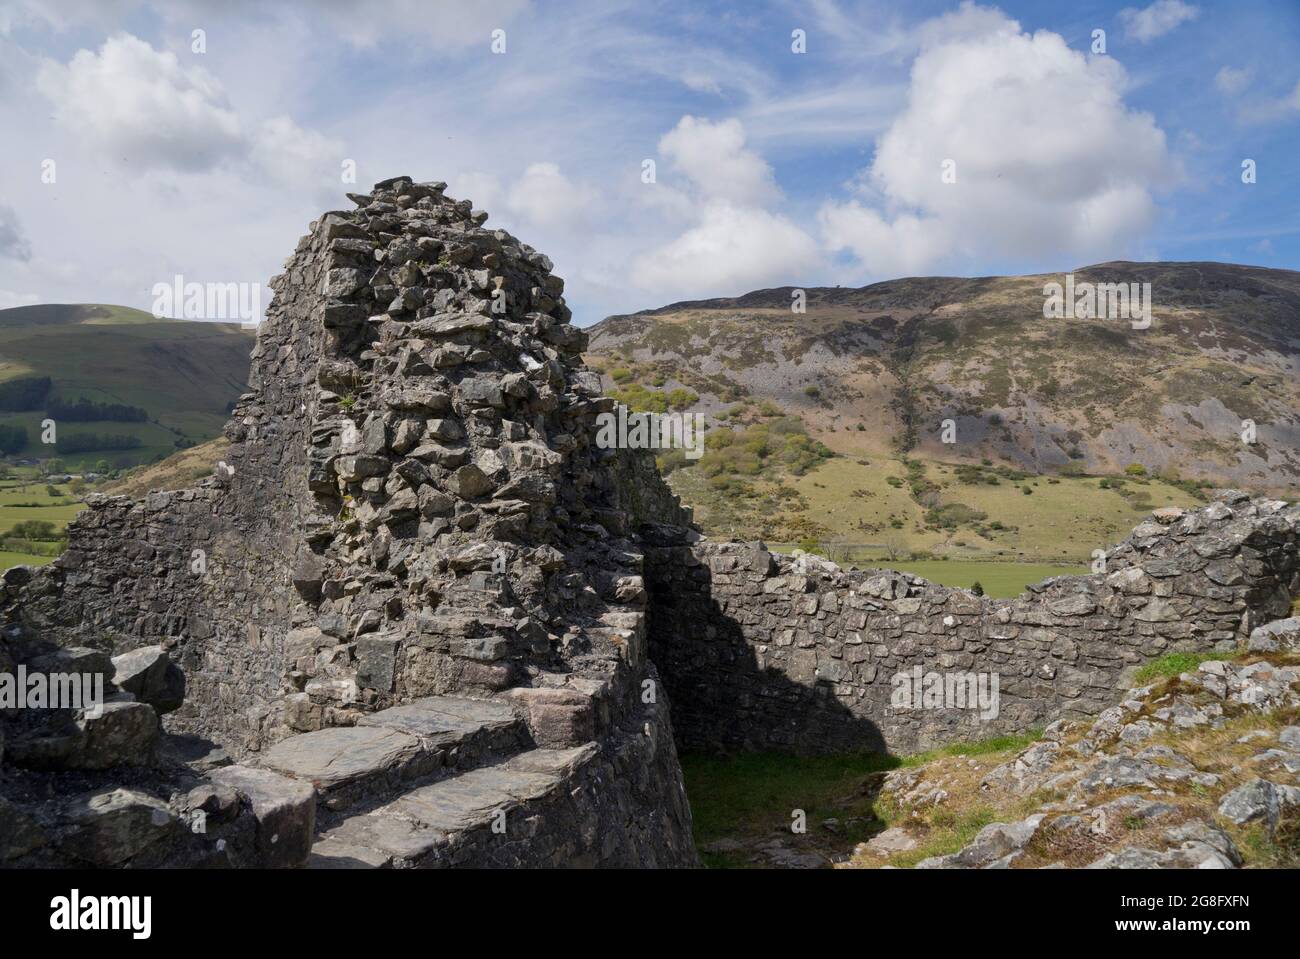 Castell y Bere, un château gallois construit par Llywelyn le Grand dans les années 1220, Gwynedd, pays de Galles, Royaume-Uni, Europe Banque D'Images